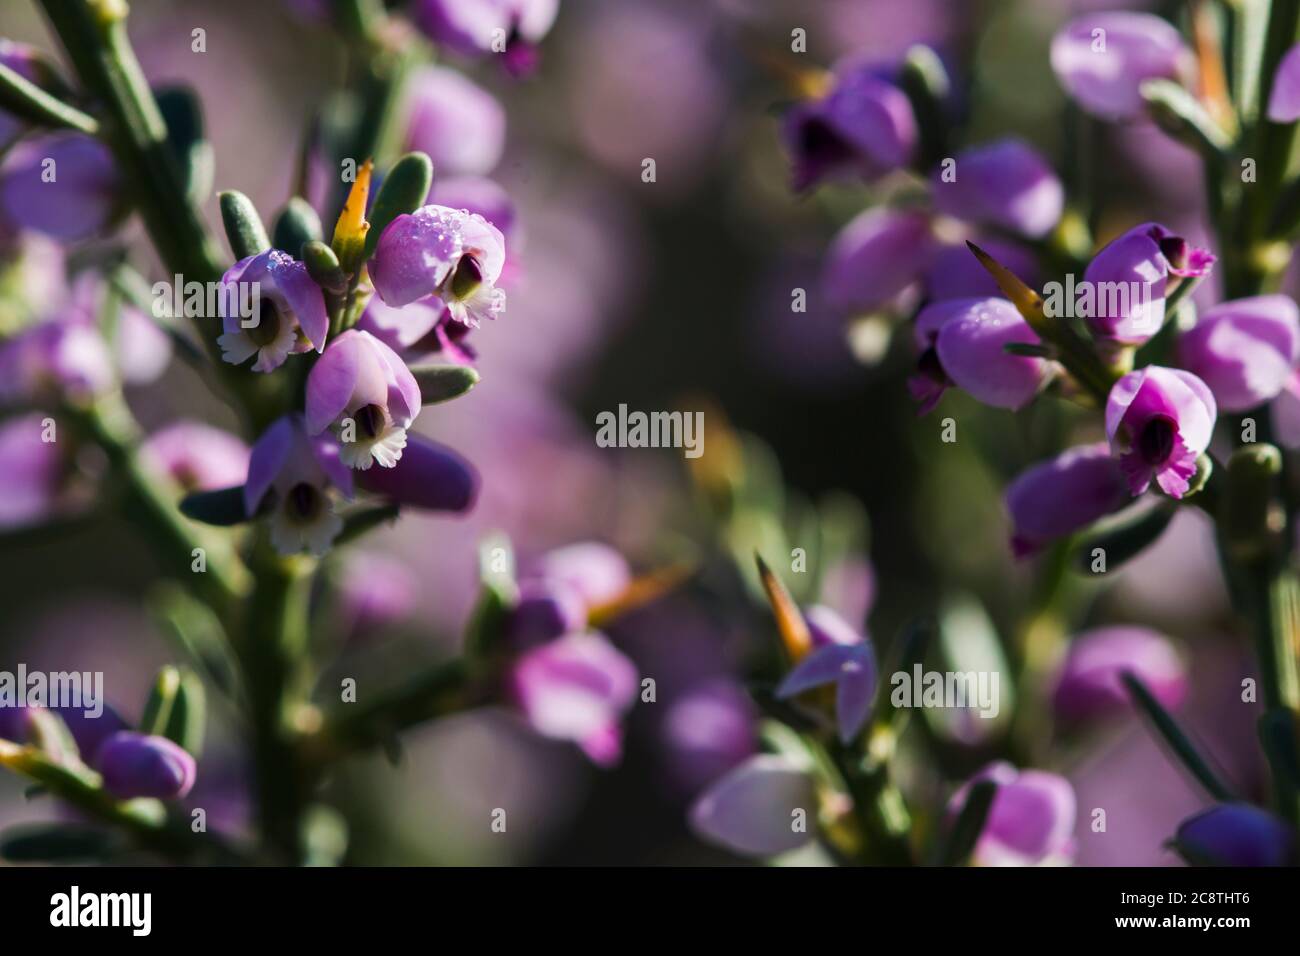 Dettagli dei fiori piccoli e sinuosi della pianta di Nylandtia Spinoza Fynbos Foto Stock